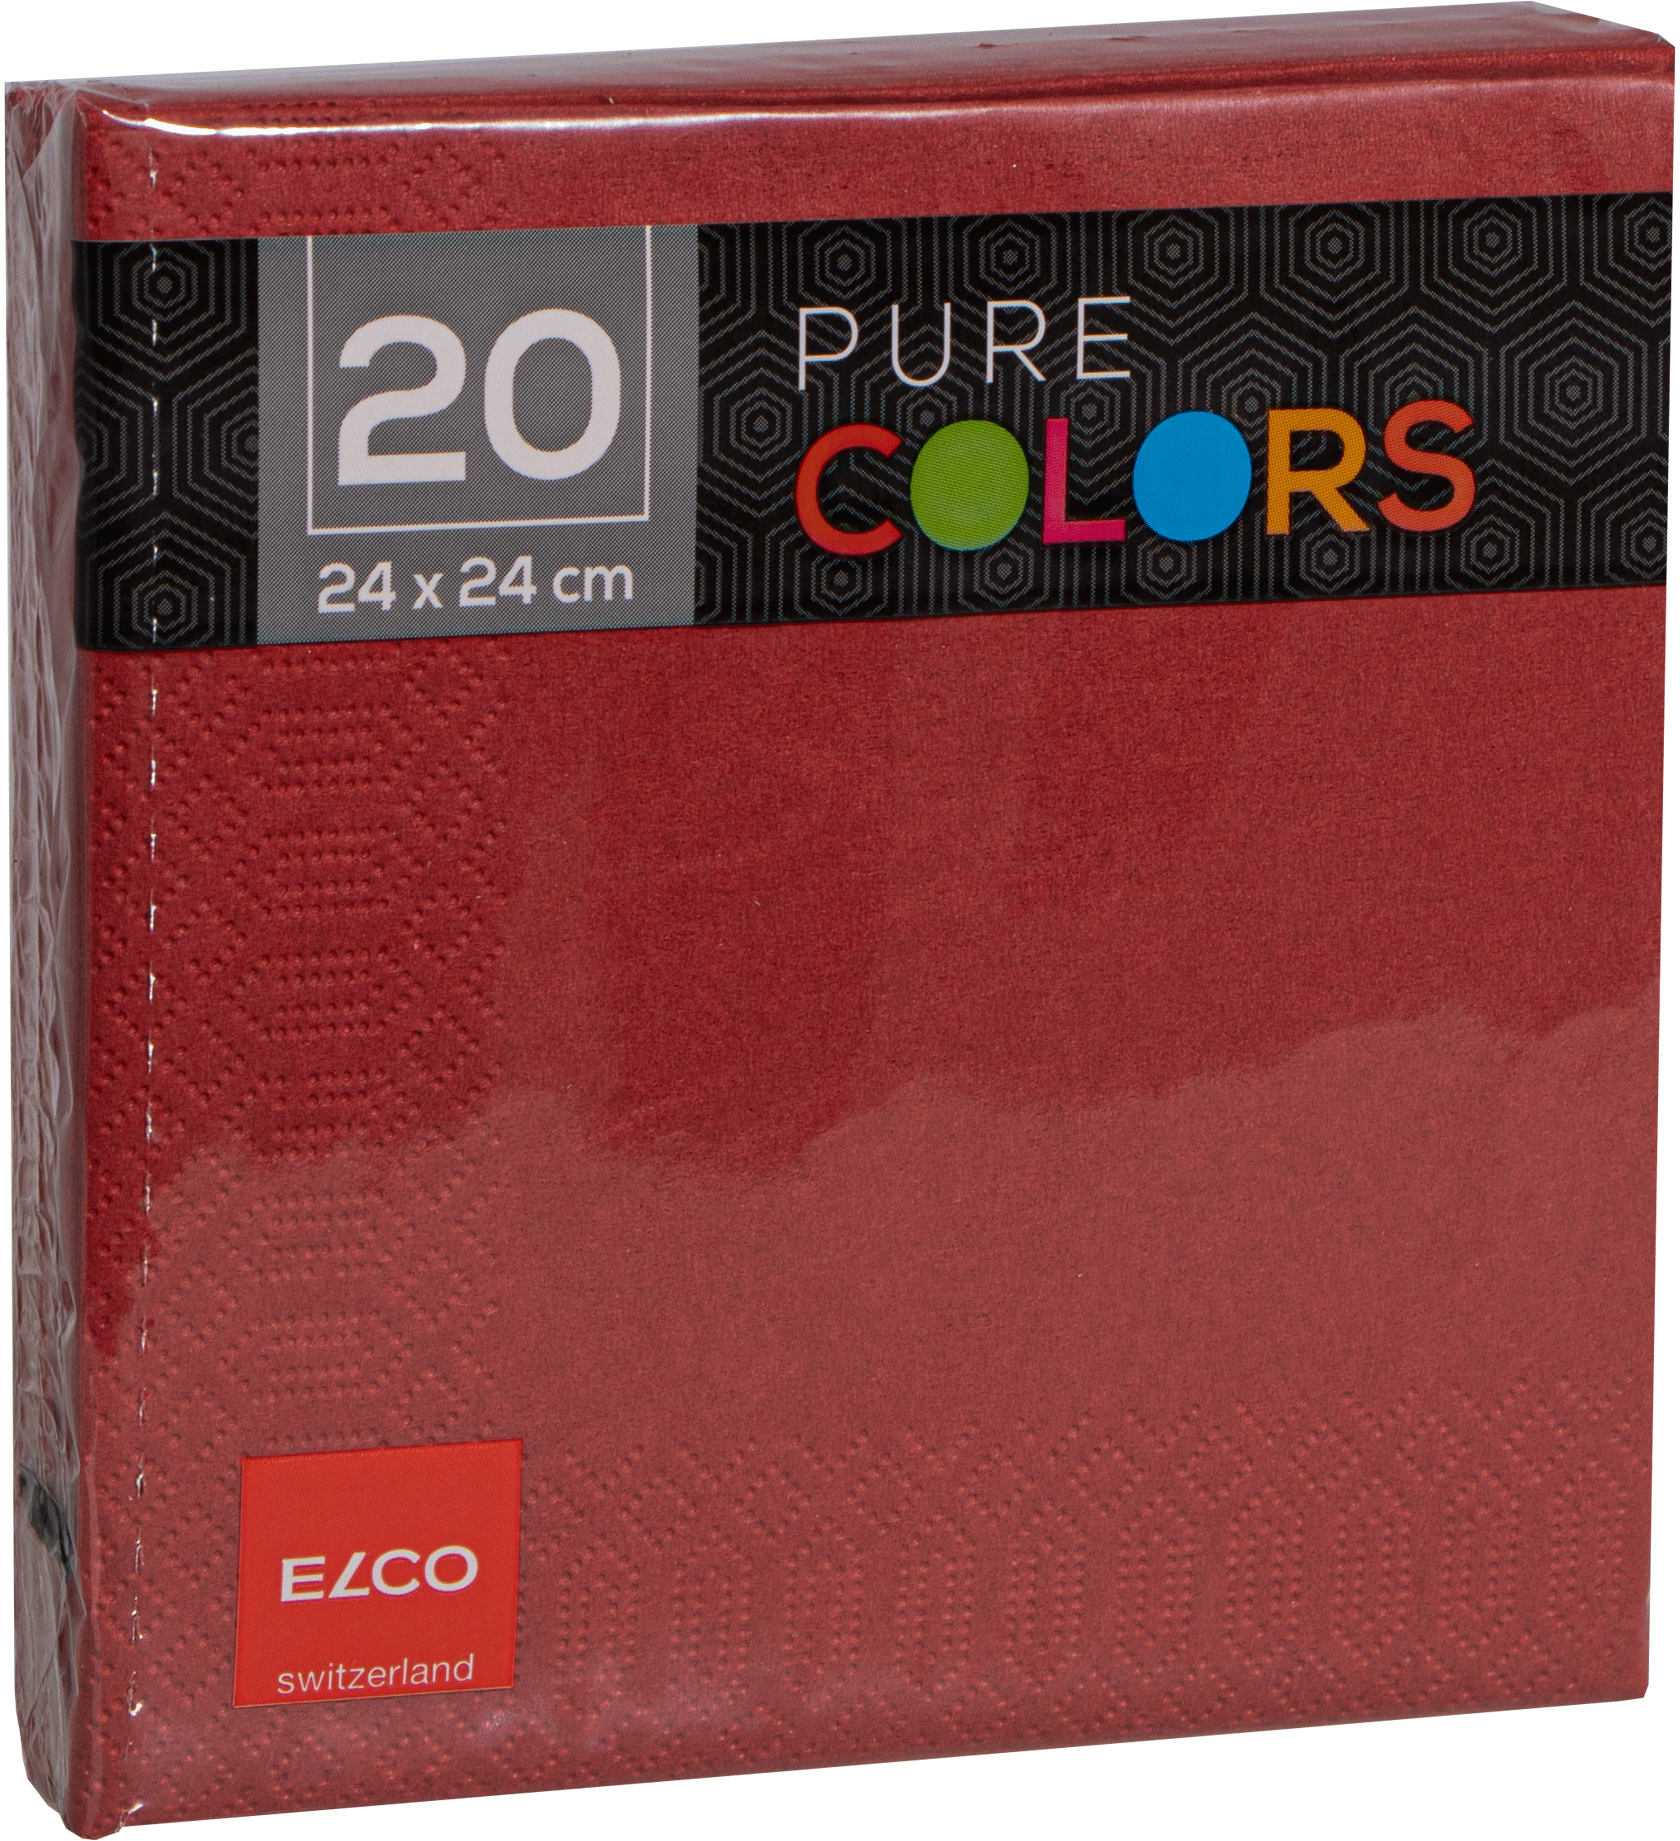 ELCO Serviettes tissue 24x24cm PC234020-025 3 plis, bordeaux 20pcs.